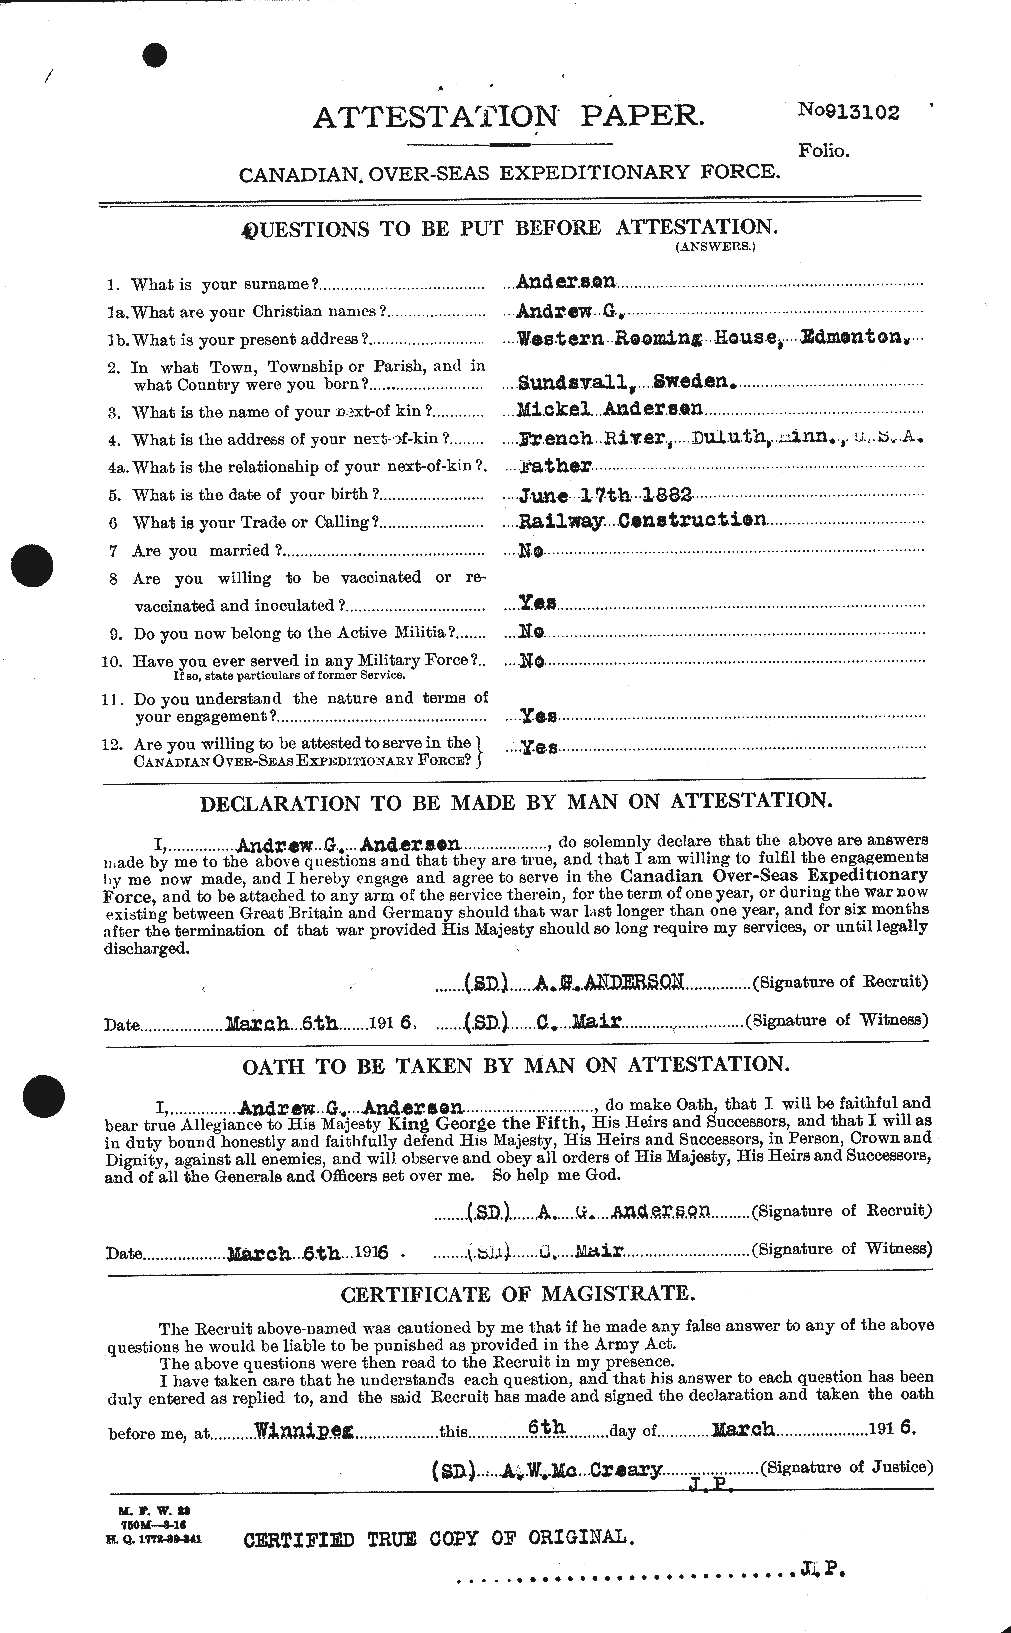 Dossiers du Personnel de la Première Guerre mondiale - CEC 209405a